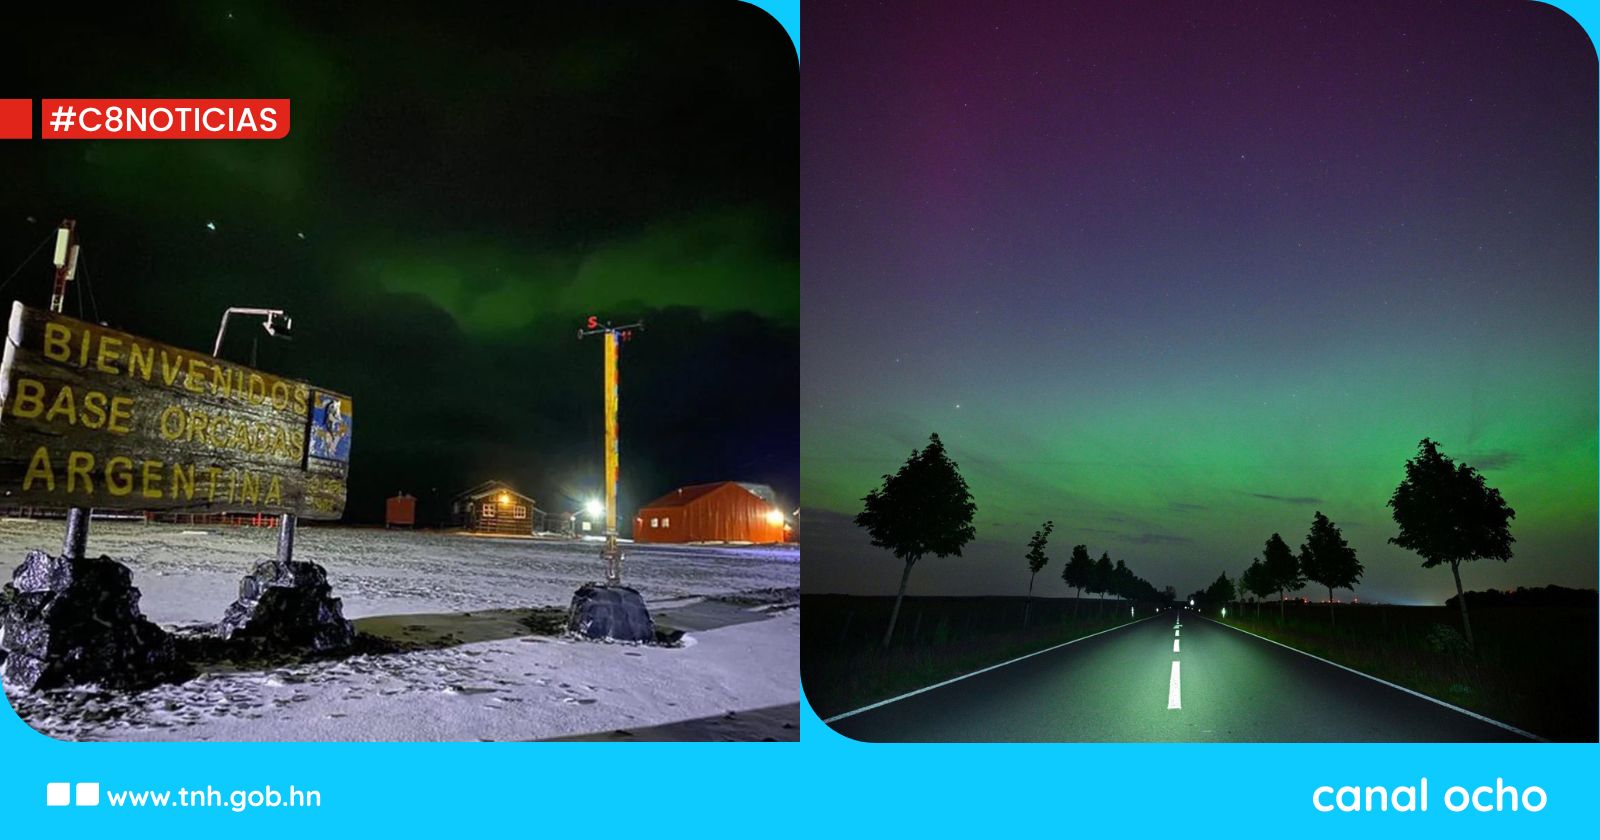 ¡Fenomenal! Tormenta geomagnética deja ver auroras boreales en el mundo